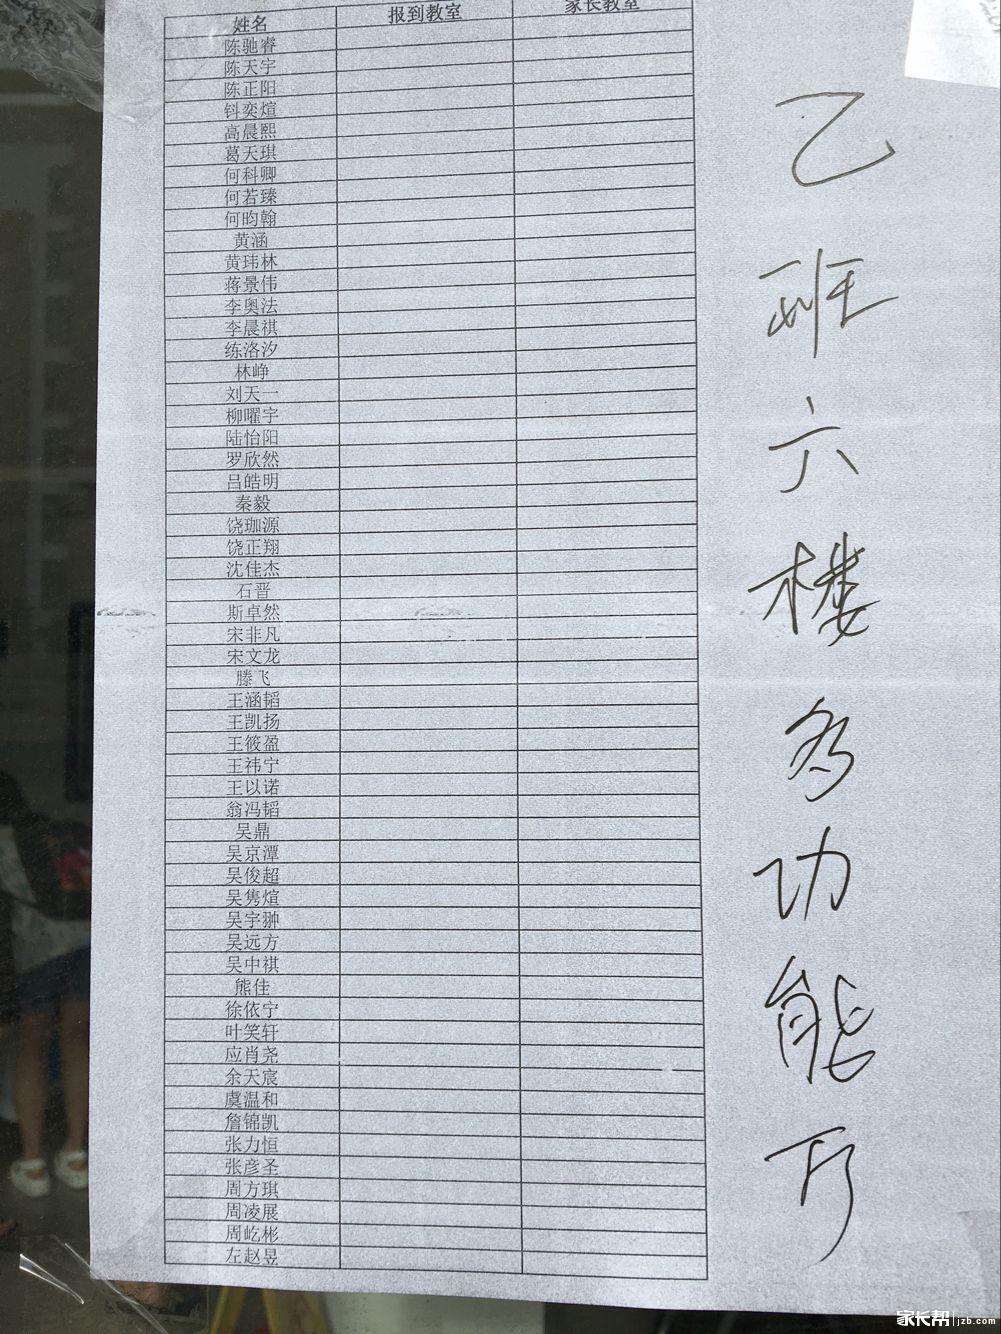 2016年杭州高级中学实验班分班名单2